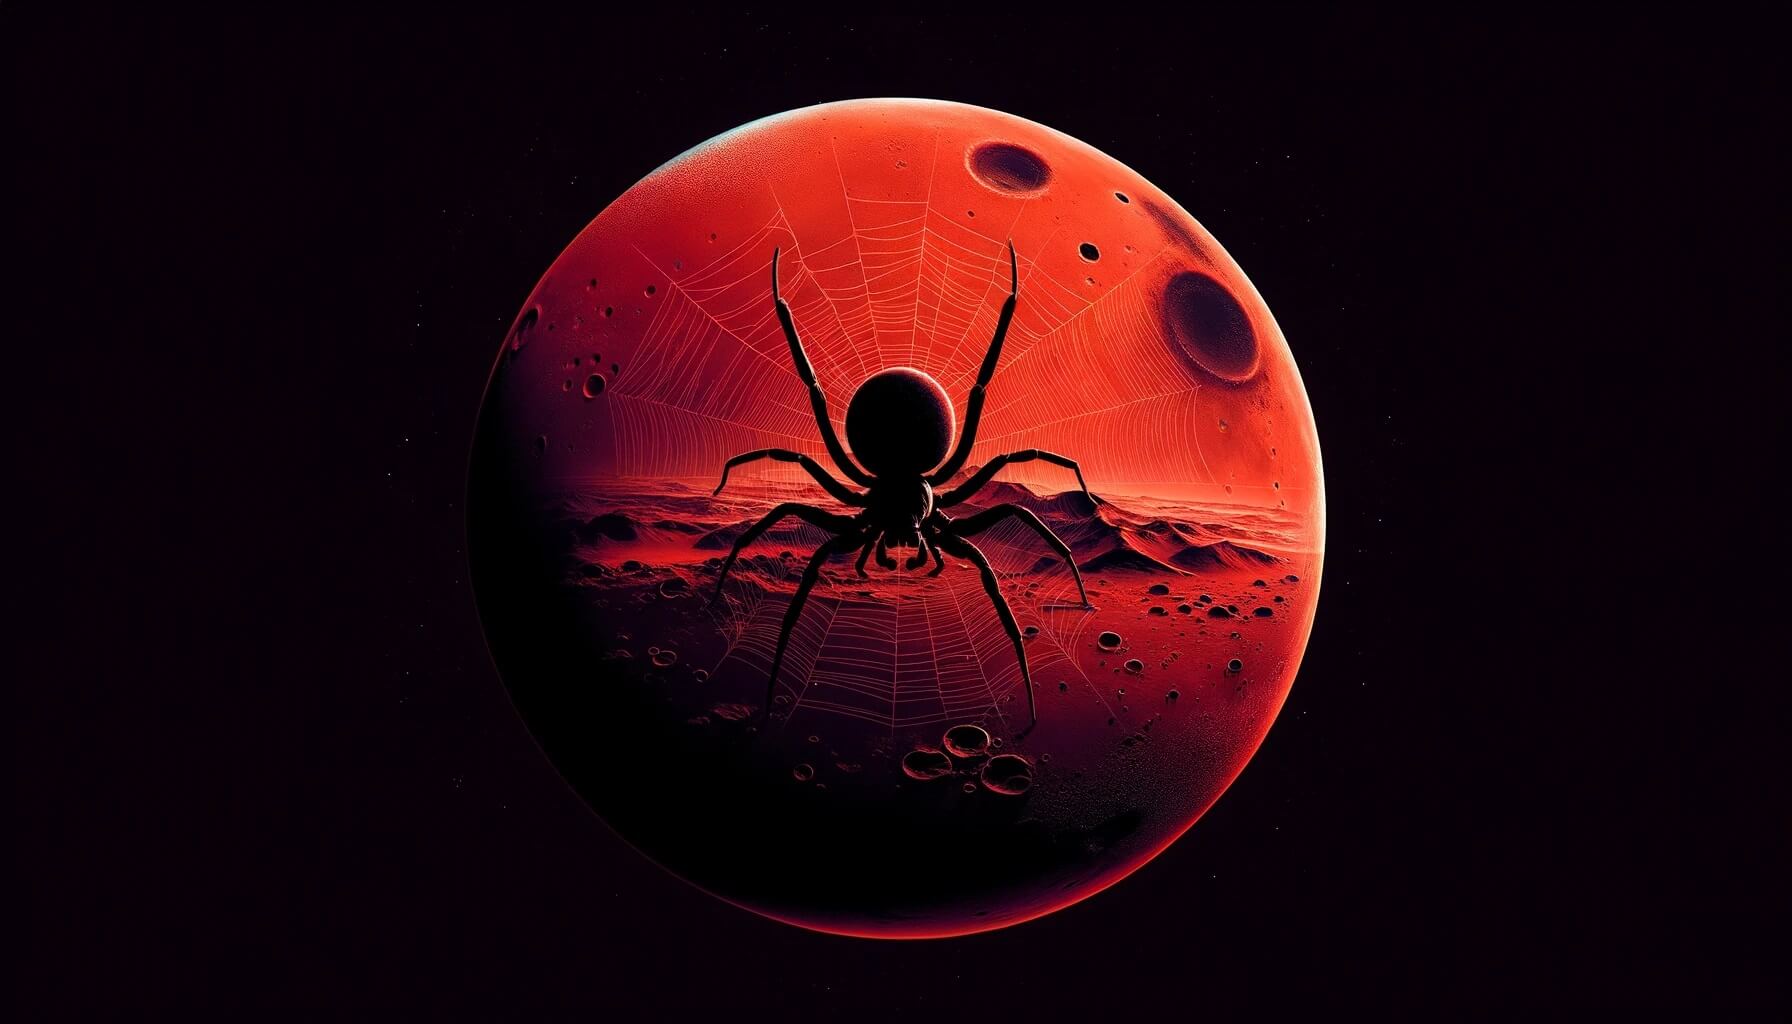 В интернете обсуждают фотографию с пауками на Марсе. Что это такое на самом деле